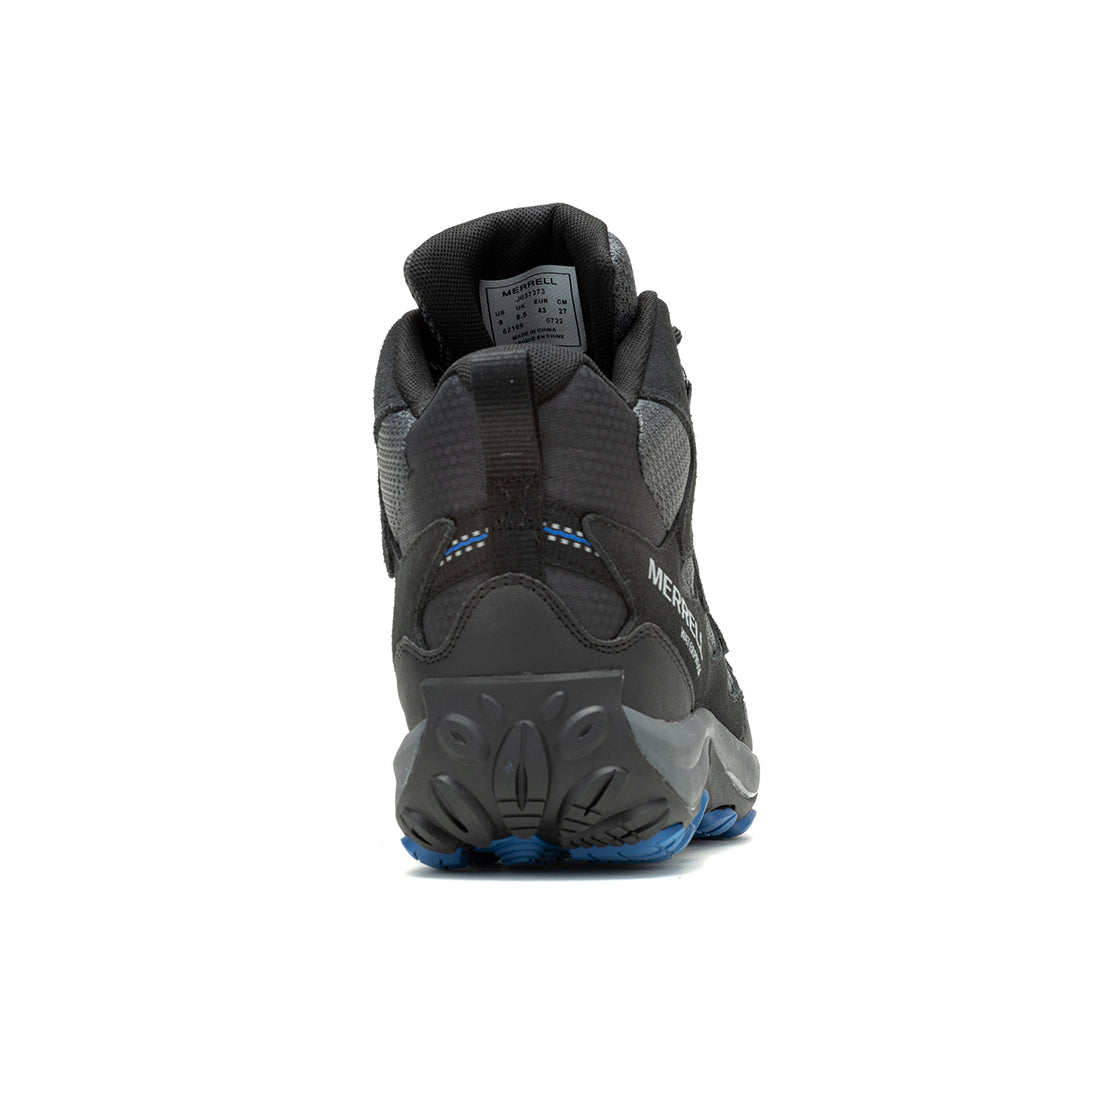 West Rim Mid Waterproof -Black/Blue Mens Hiking Shoes-4